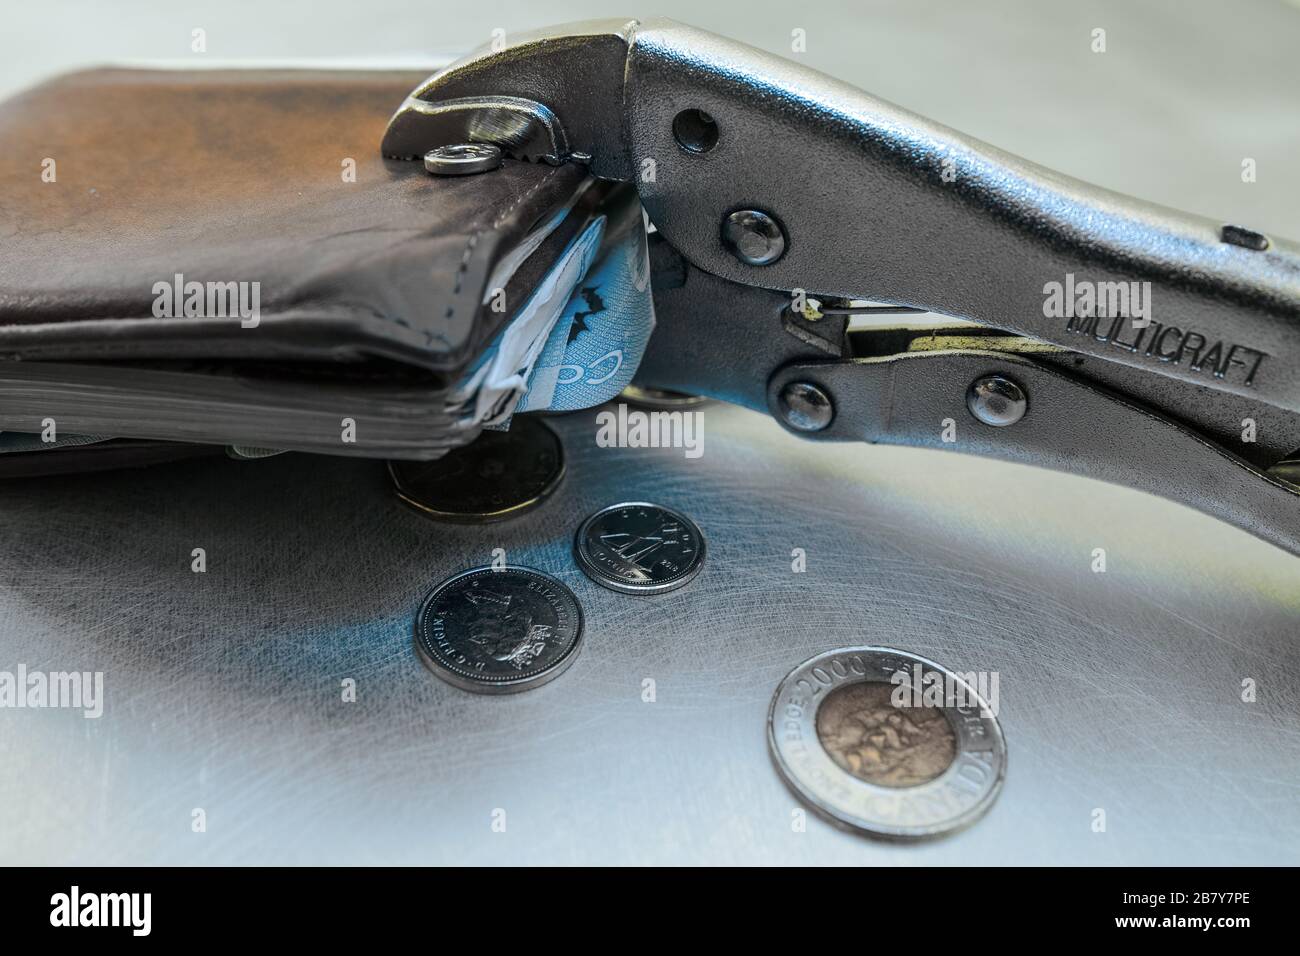 Auf einer Metalloberfläche wird eine Brieftasche mit einer Zange zusammengedrückt, auch einige (kanadische) Währungen sind umverteilt. Stockfoto